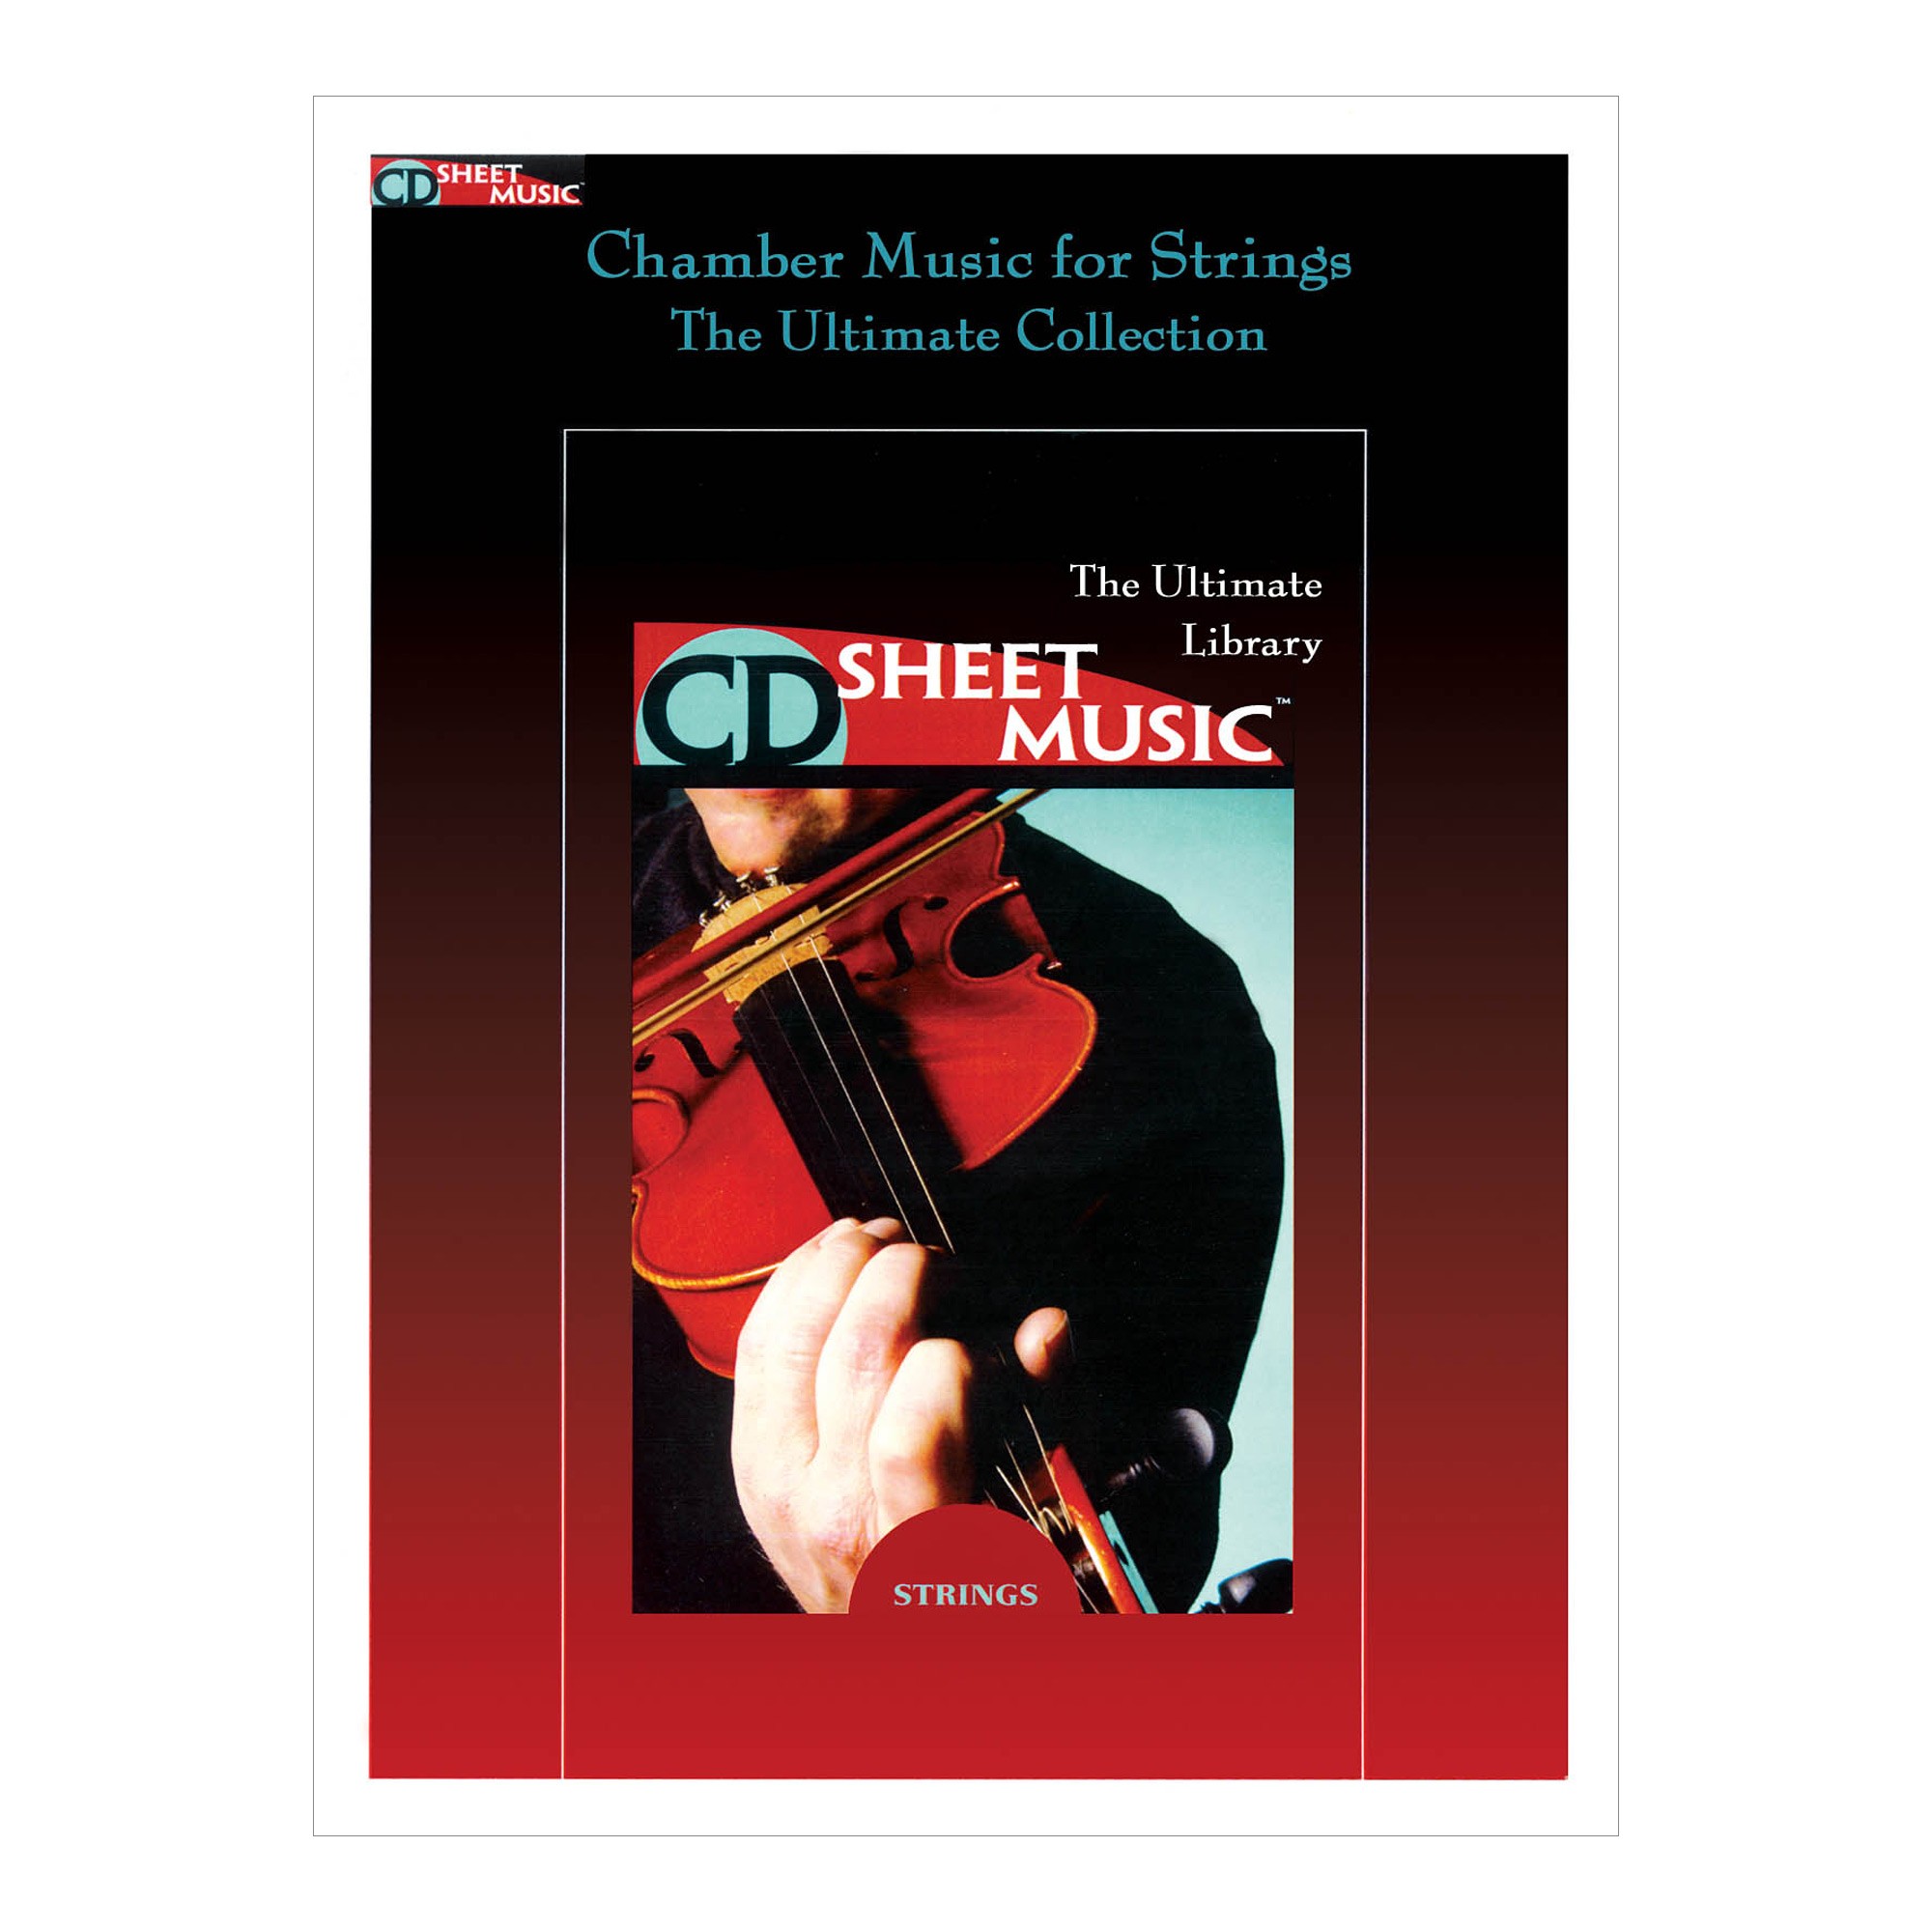 Chamber Music for Strings (CD-ROM)